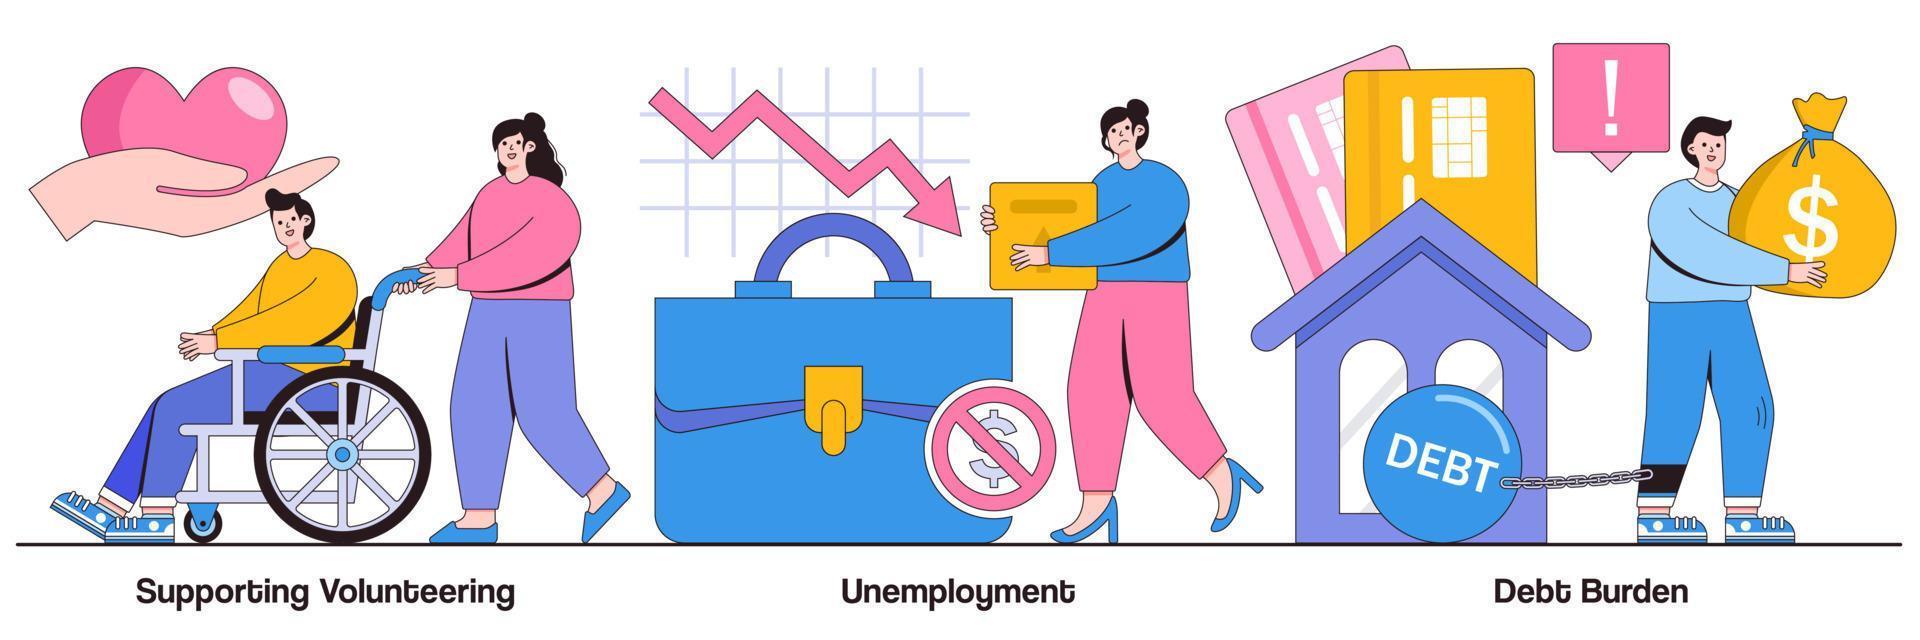 Illustriertes Paket zur Unterstützung von Freiwilligenarbeit, Arbeitslosigkeit und Schuldenlast vektor